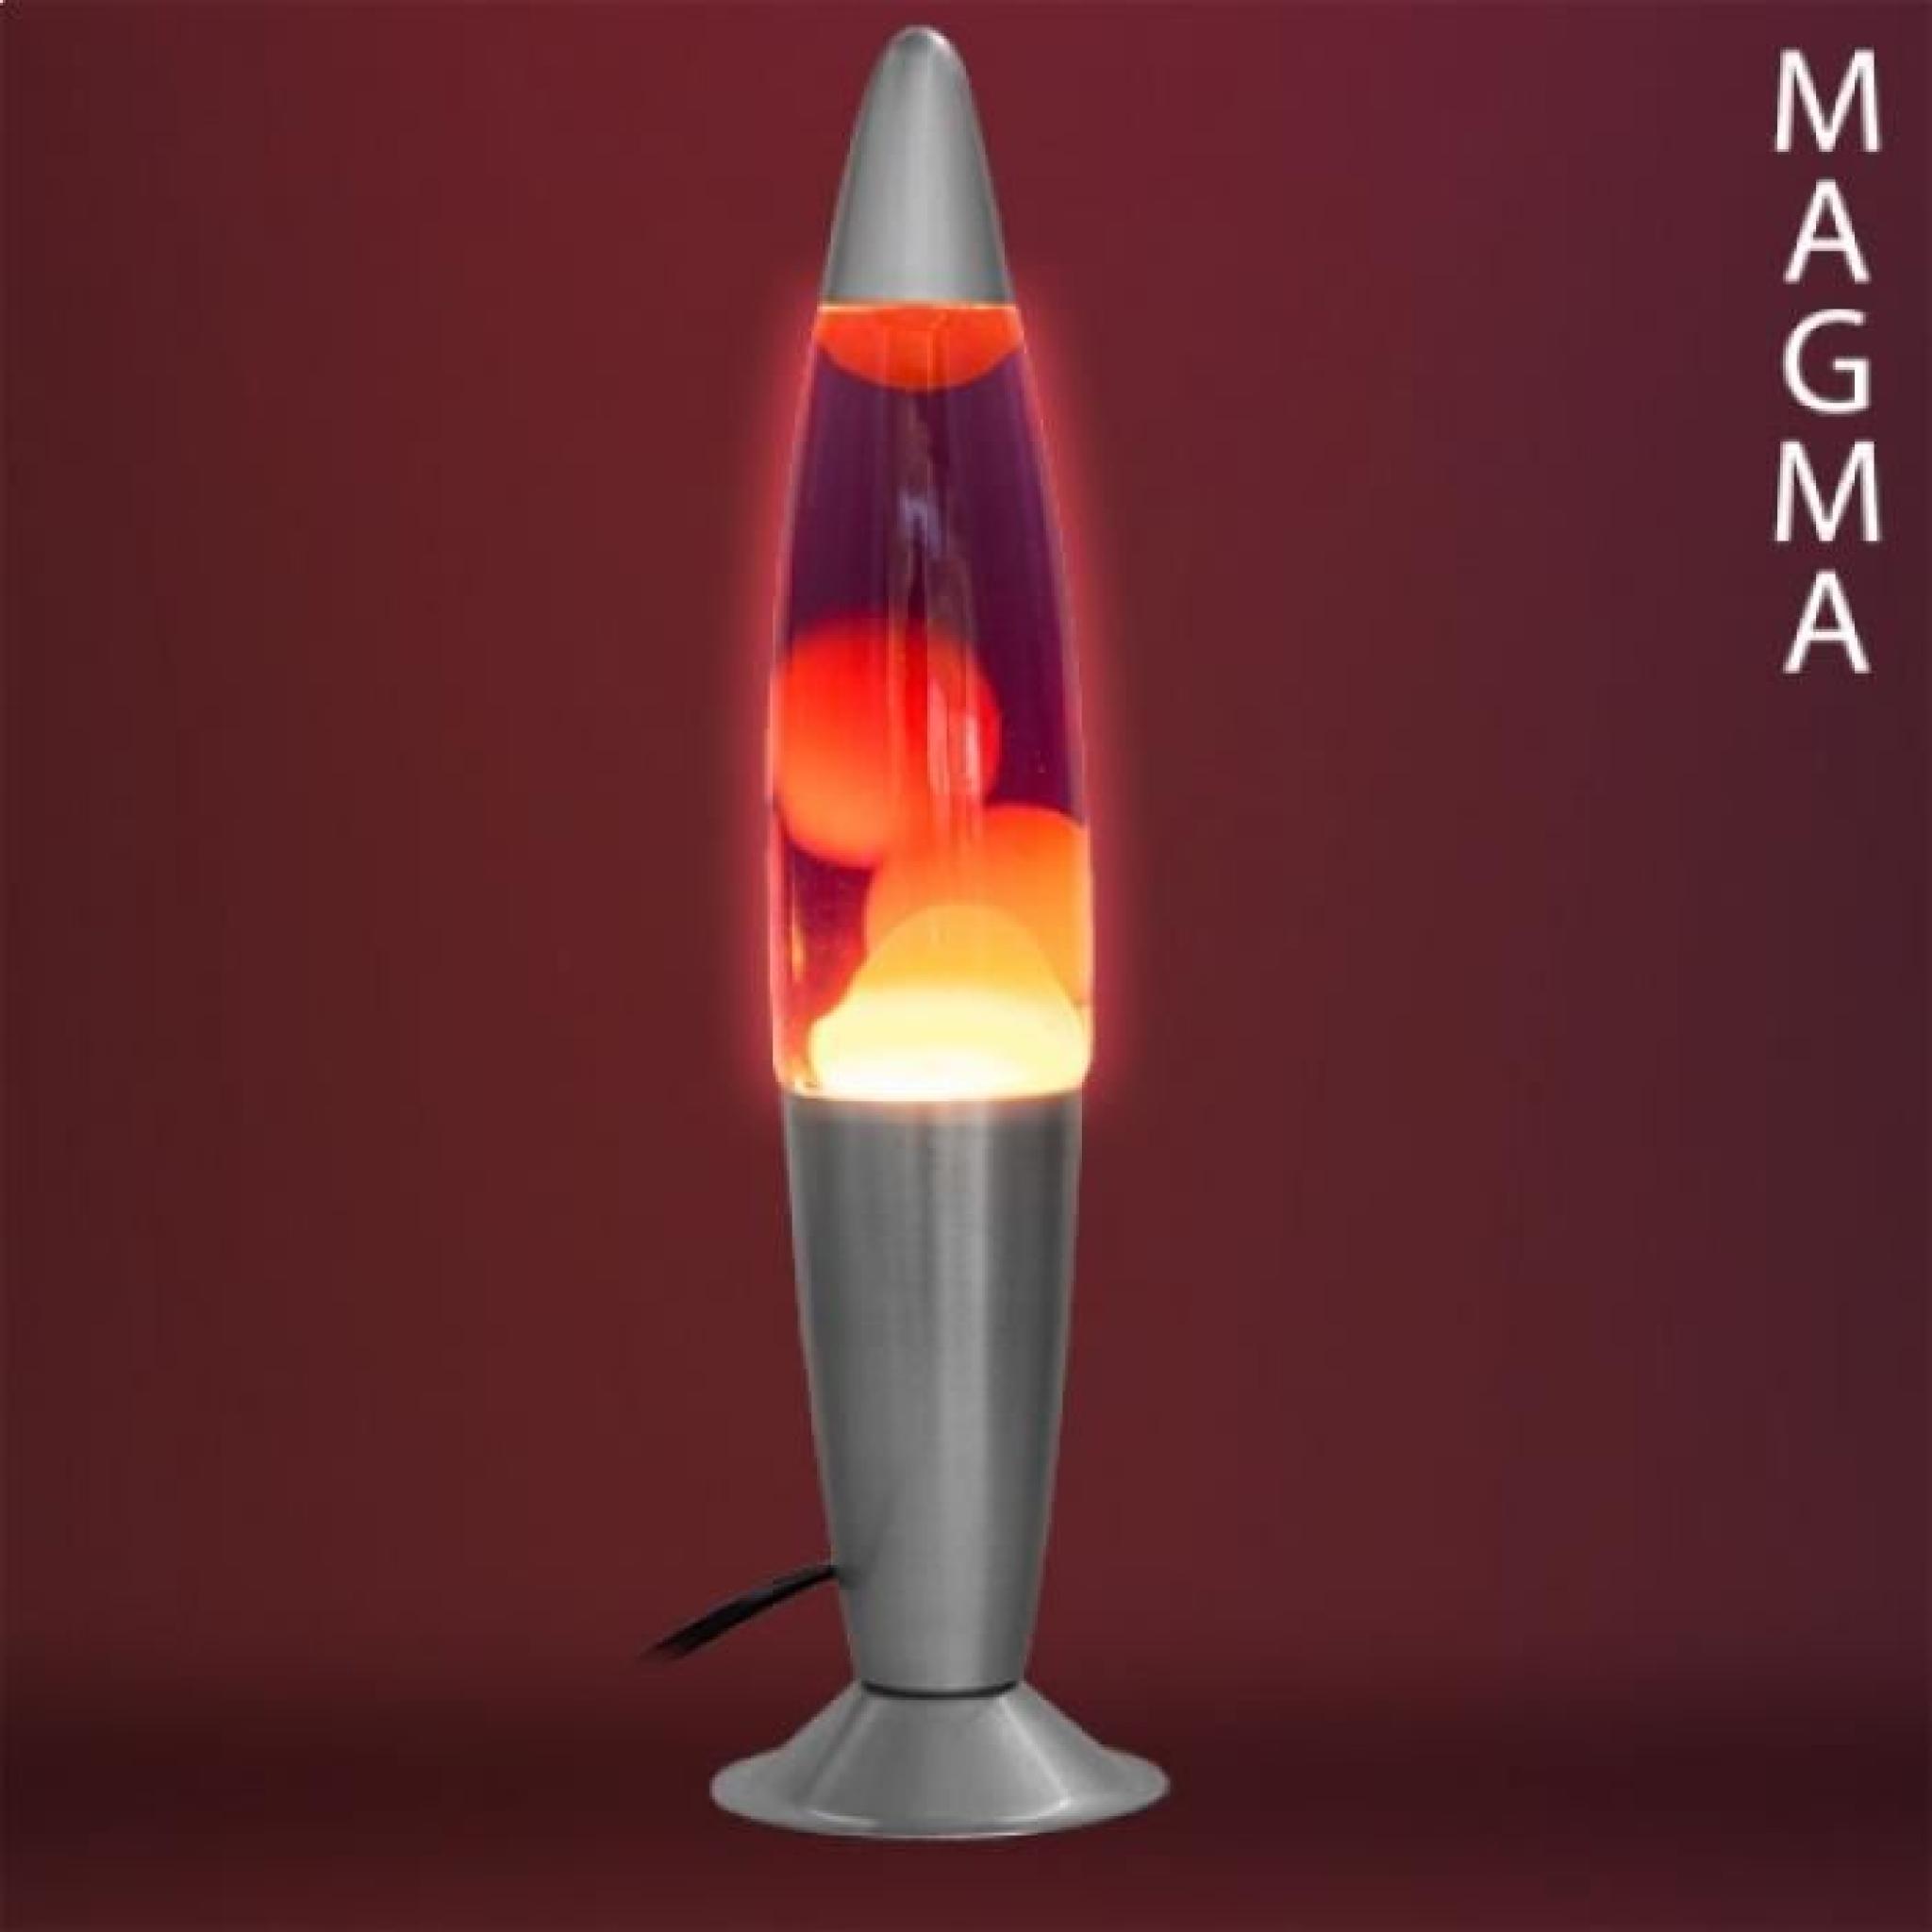 Lampe à Lave Magma fusée rouge pas cher